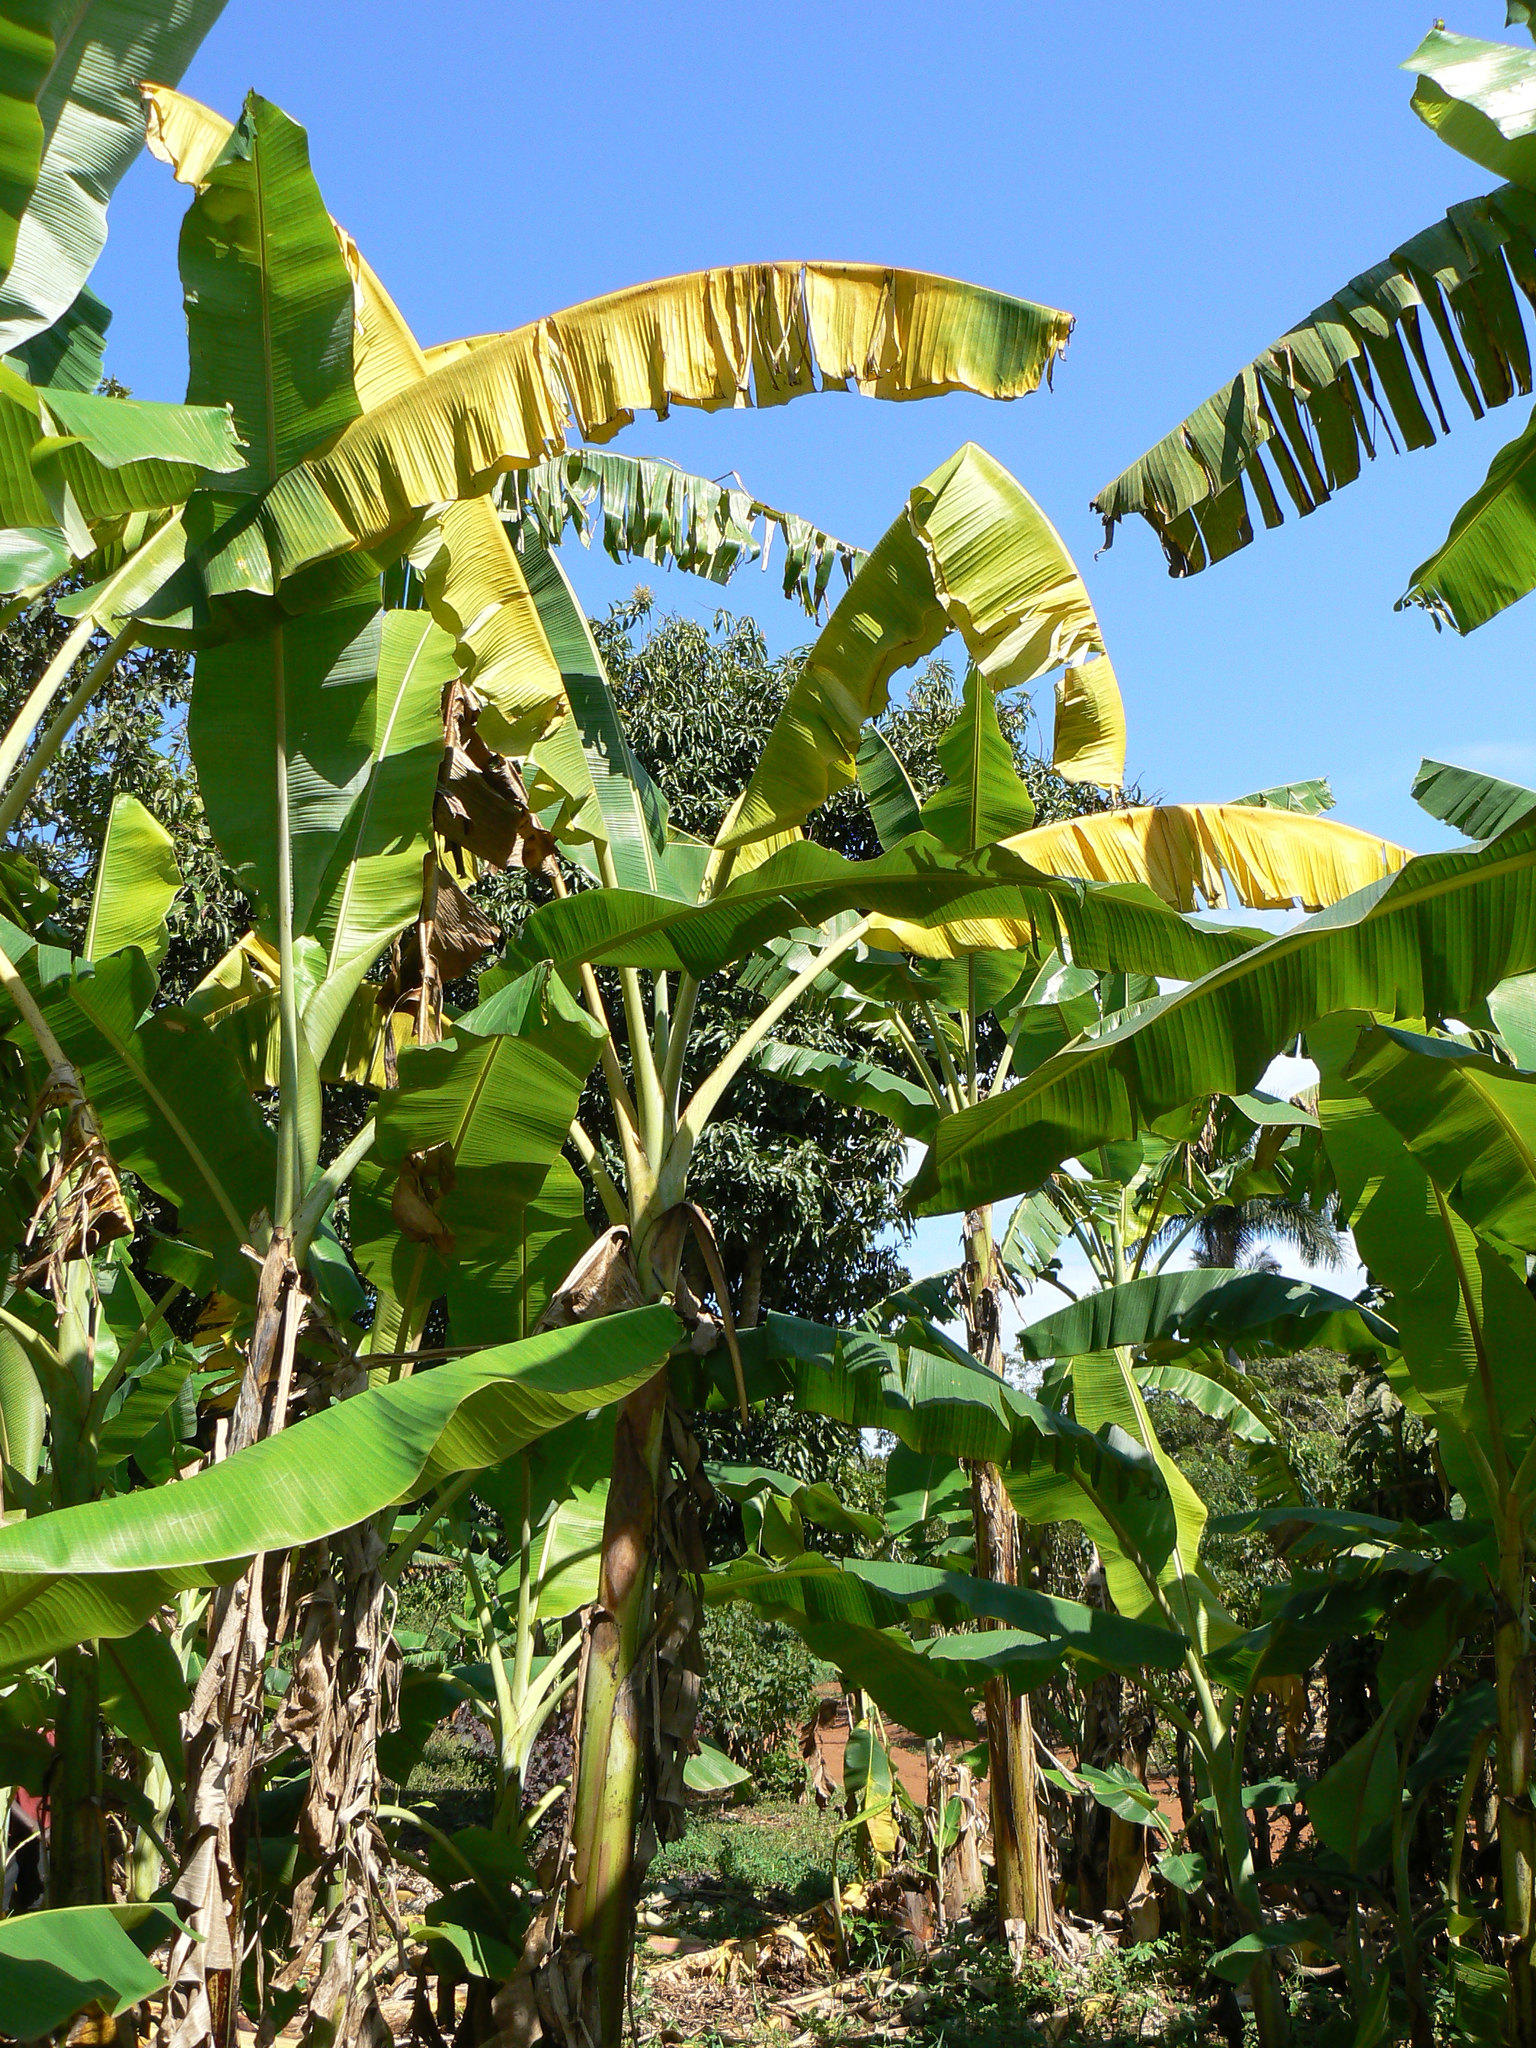 banana trees